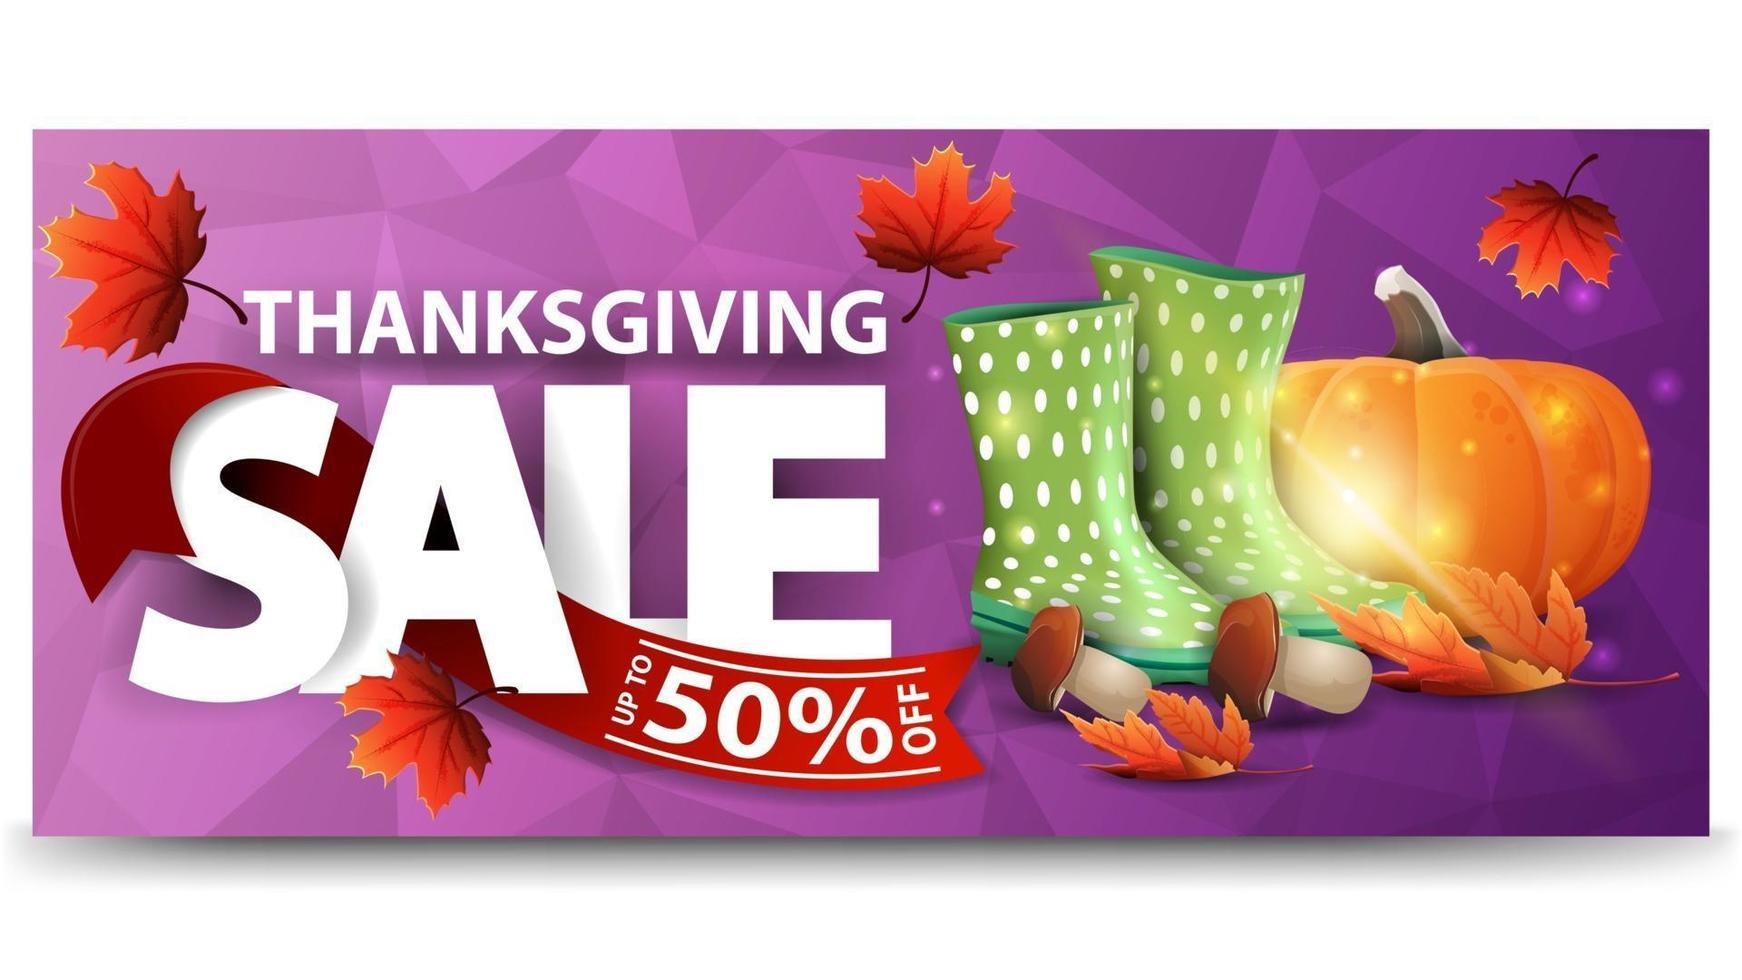 vente de Thanksgiving, jusqu'à 50 de réduction, bannière web horizontale violette avec texture polygonale, bottes en caoutchouc, citrouille, champignons et feuille d'automne. vecteur